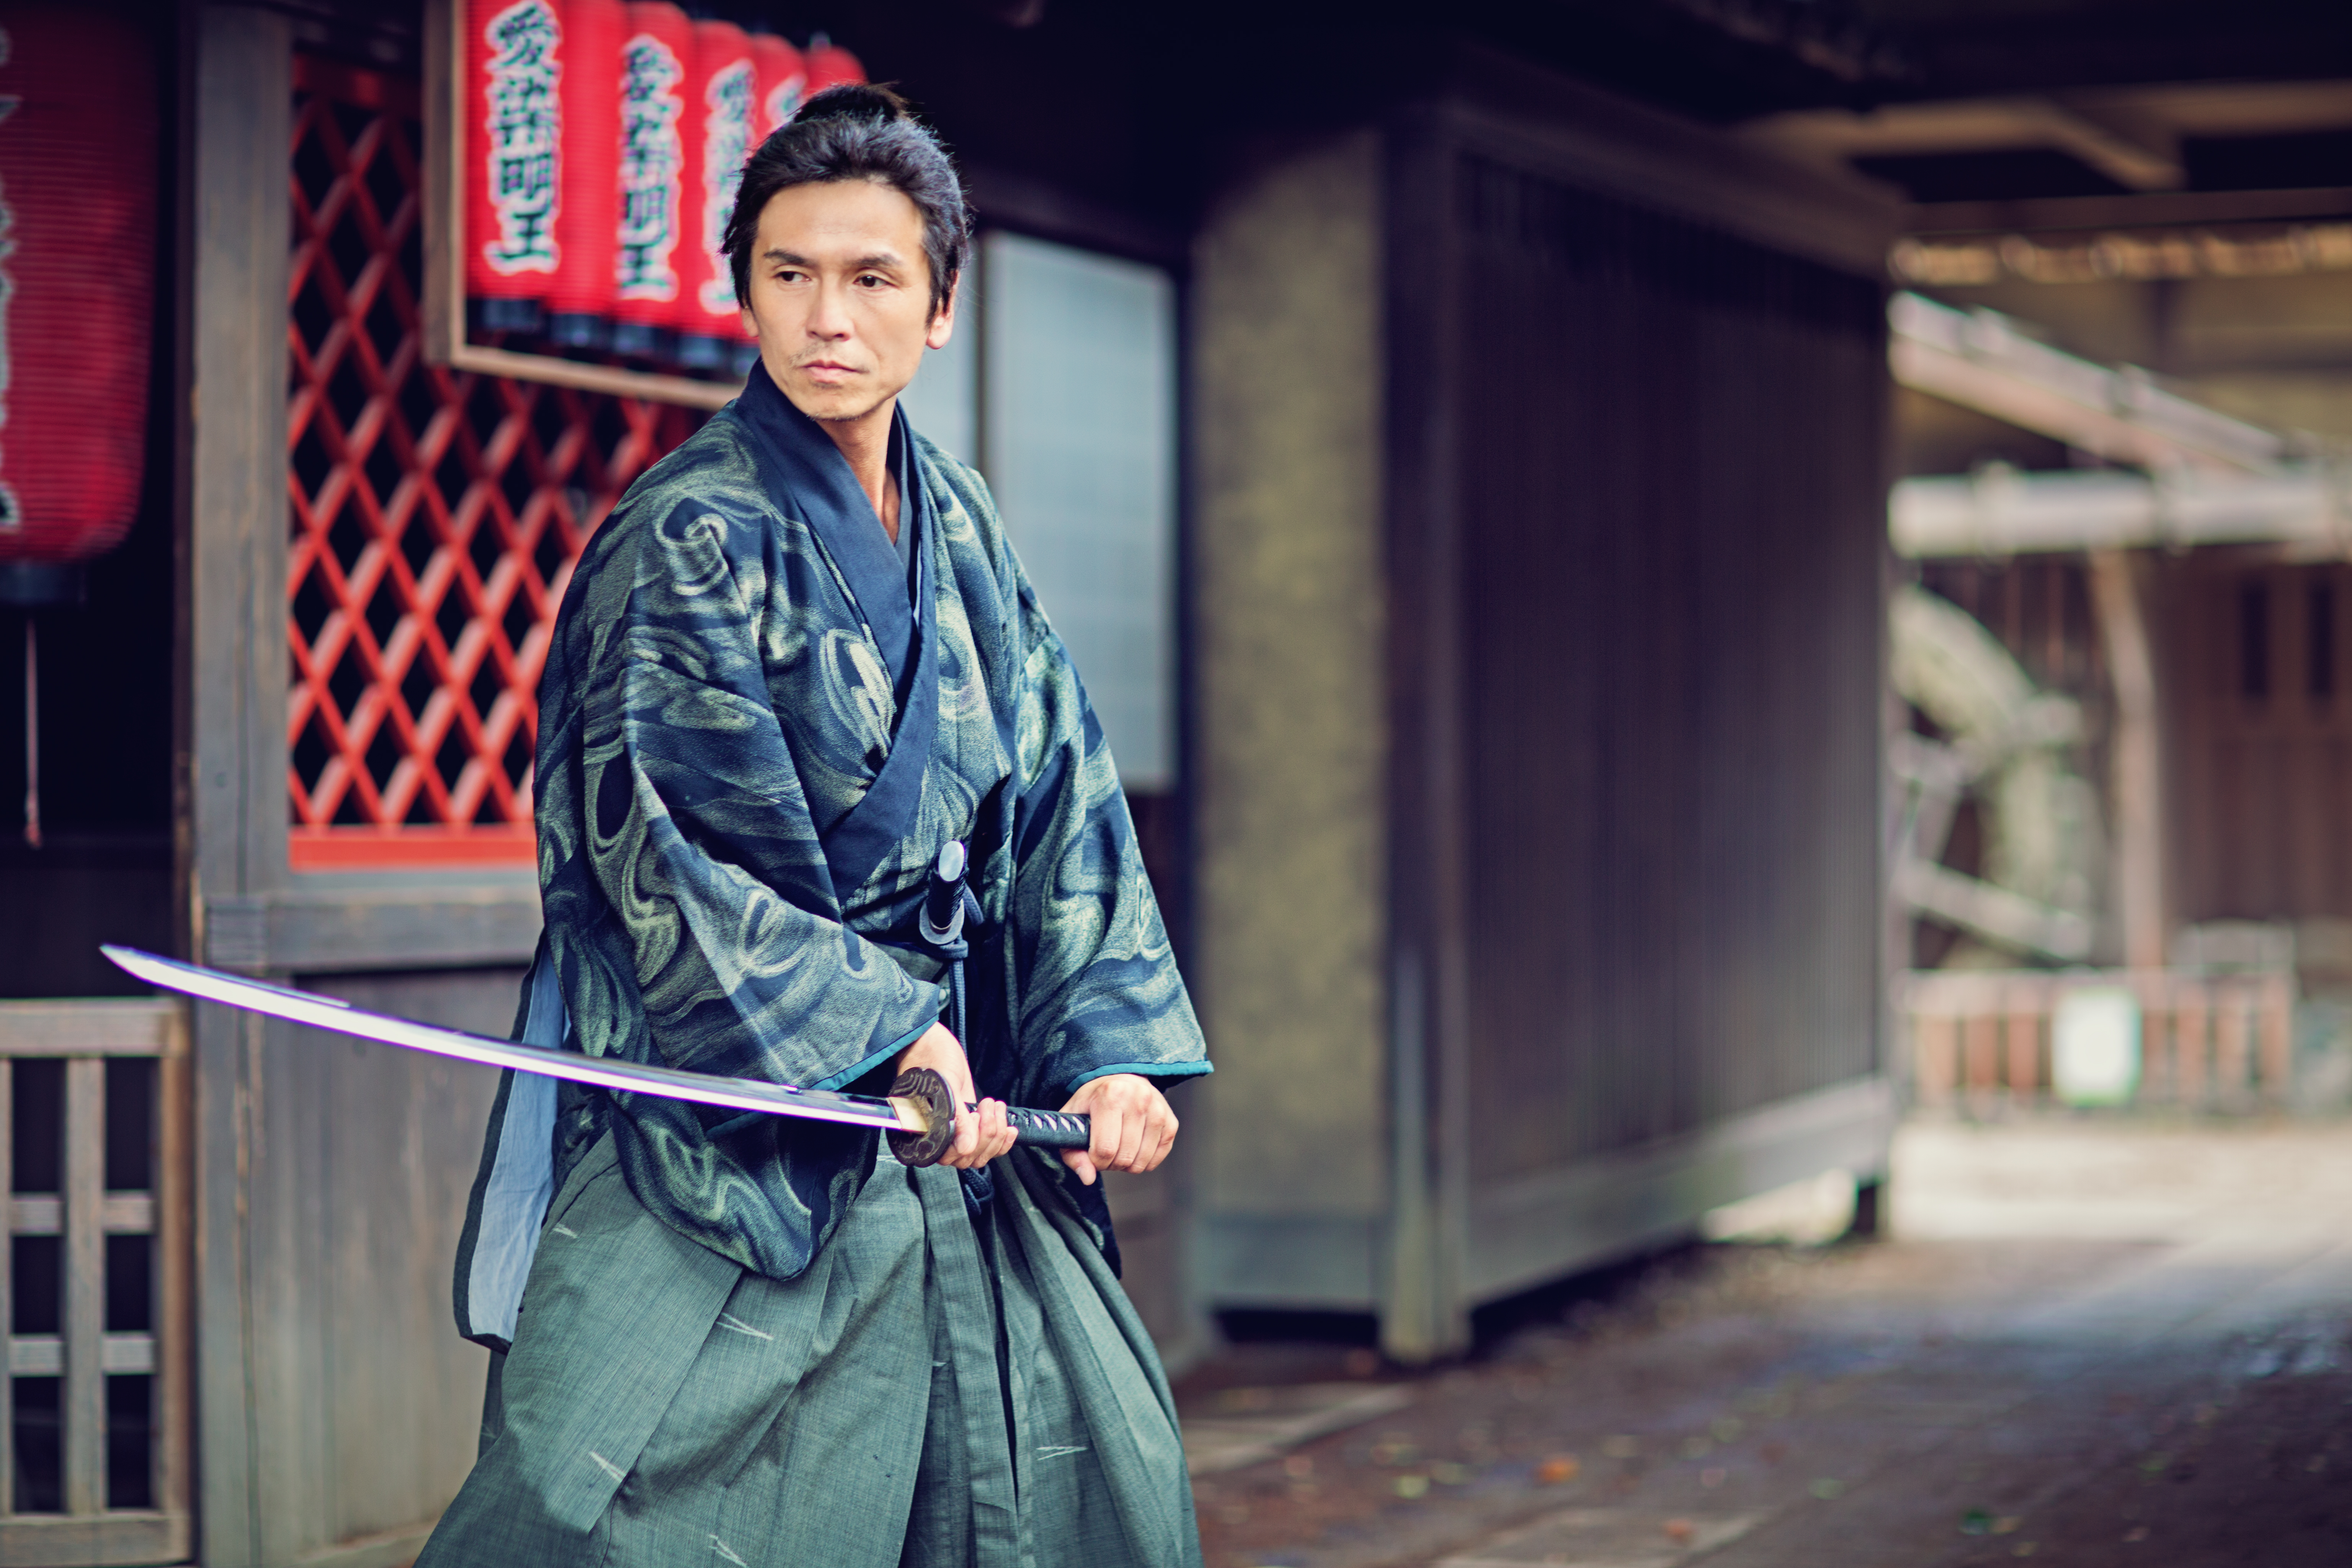 <p>Съмнителните практики на нинджите не се възприемали радушно от истинските самураи, които ценяли честта над всичко останало. Същевременно обаче винаги имало мръсна работа и самураите се радвали, че има някой друг, който бил готов да я свърши вместо тях в лицето на нинджите.</p>